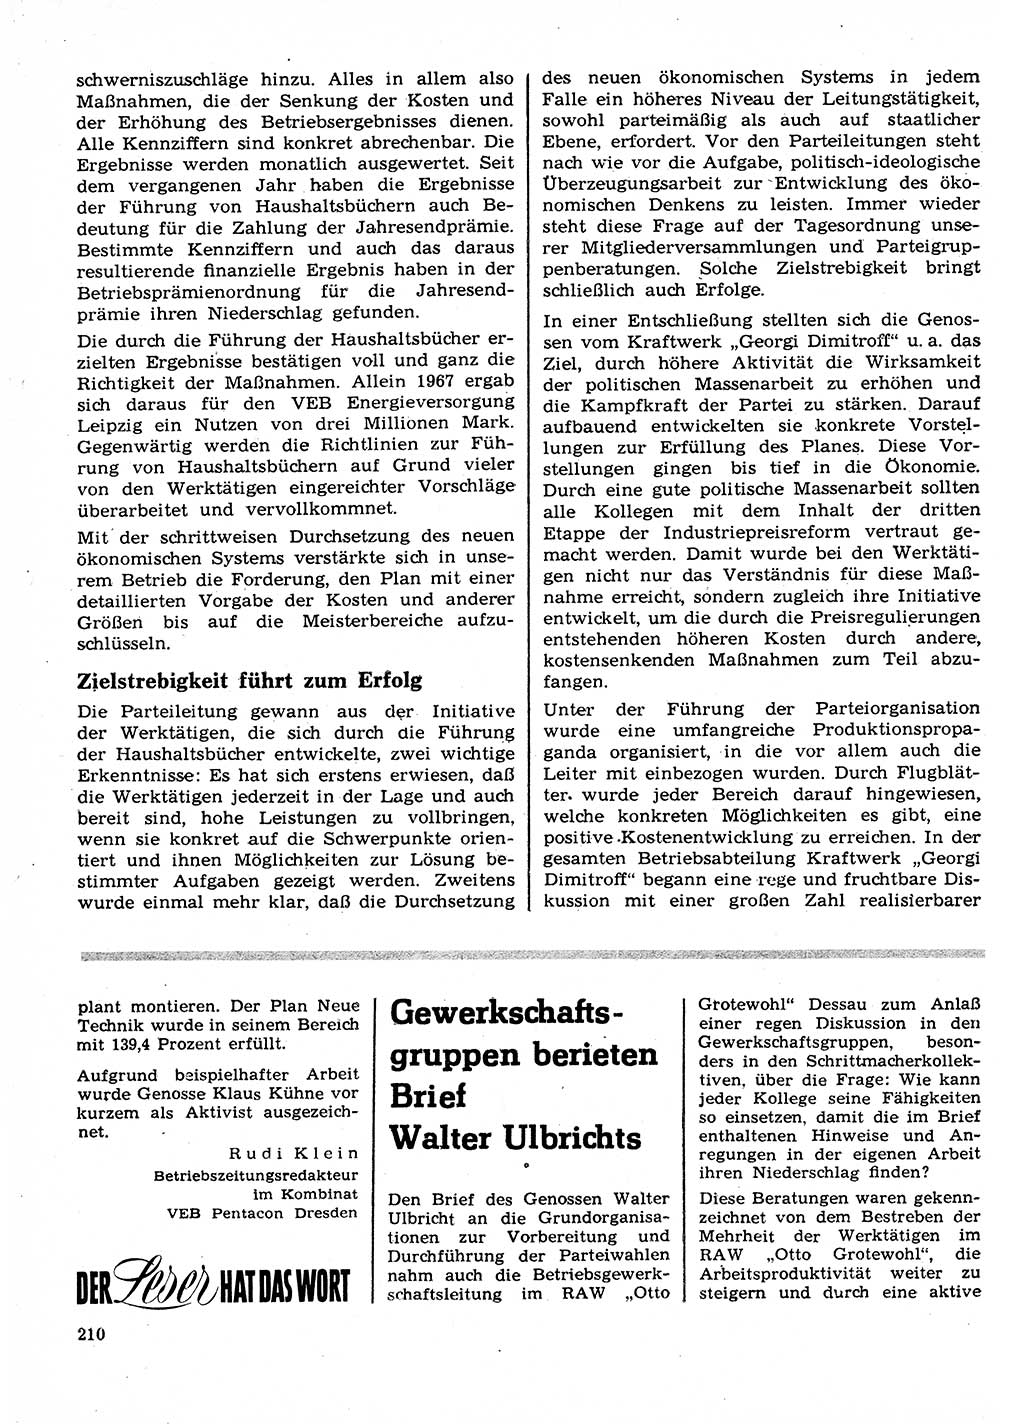 Neuer Weg (NW), Organ des Zentralkomitees (ZK) der SED (Sozialistische Einheitspartei Deutschlands) für Fragen des Parteilebens, 23. Jahrgang [Deutsche Demokratische Republik (DDR)] 1968, Seite 210 (NW ZK SED DDR 1968, S. 210)